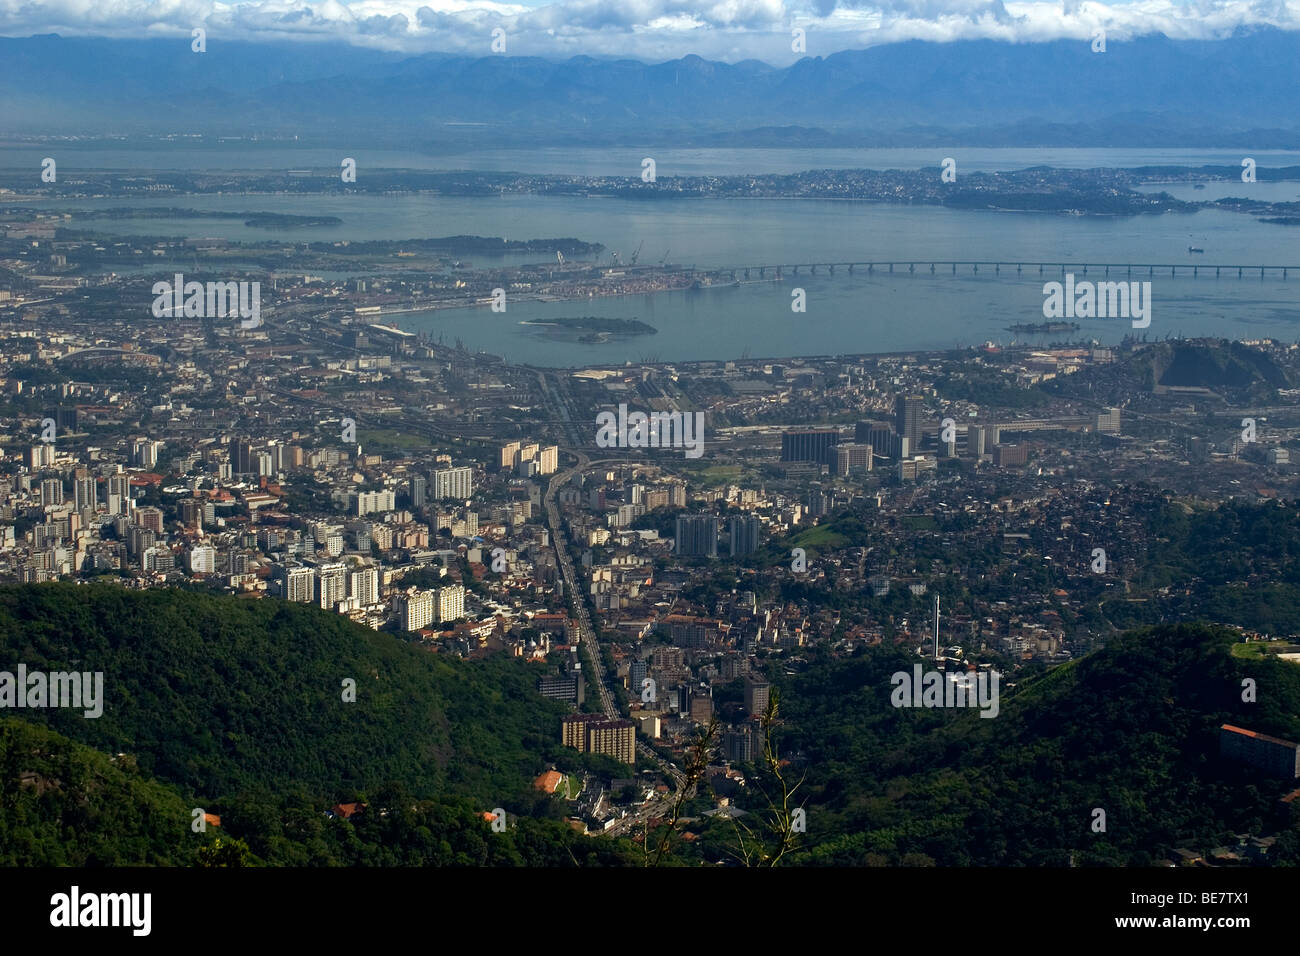 Aerial view of Rio de Janeiro, Brazil Stock Photo